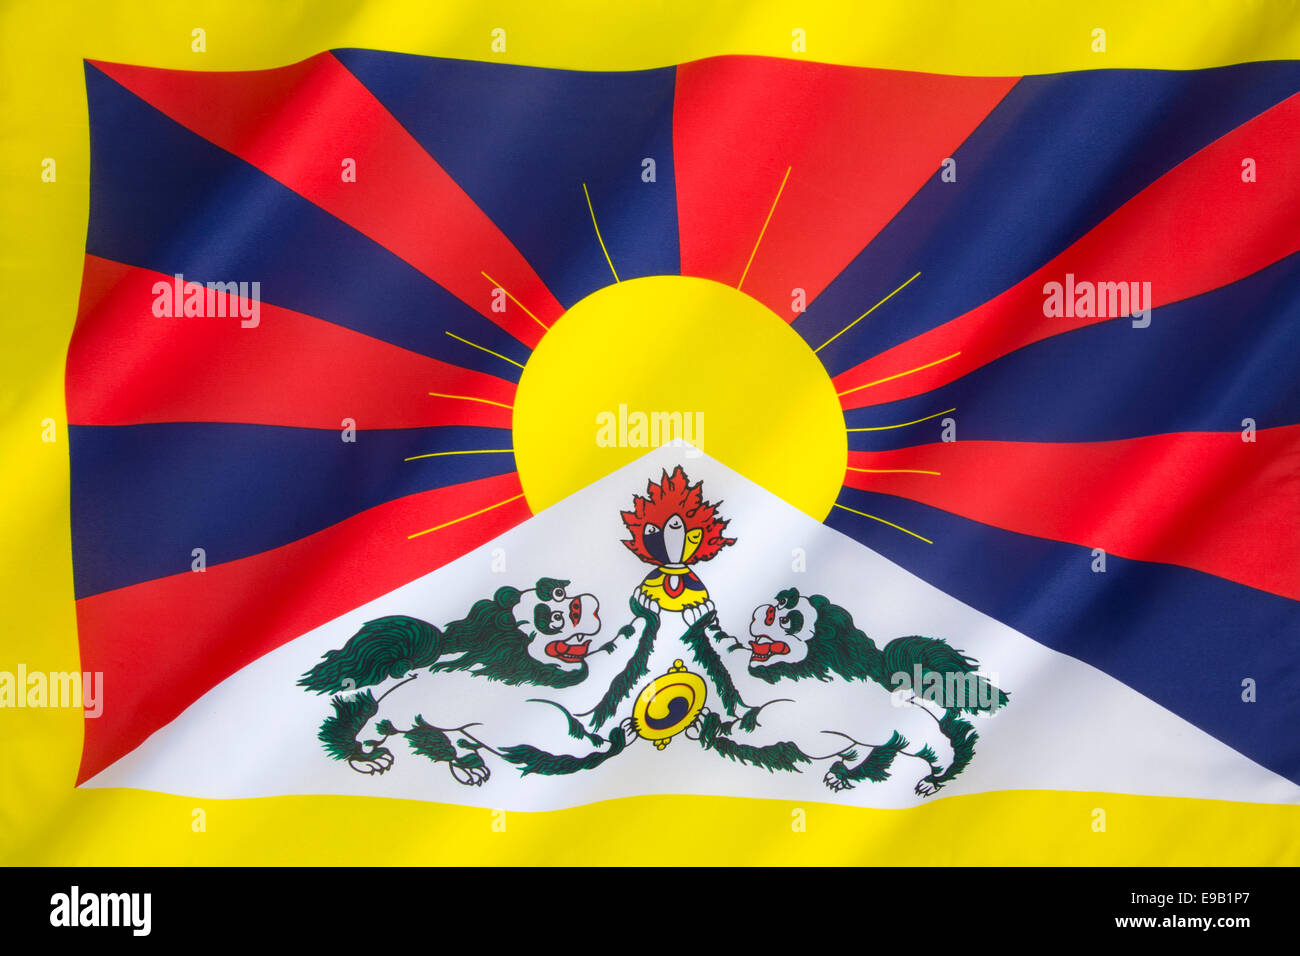 Le drapeau du Tibet - lion des neiges - Drapeau Drapeau Tibet libre Banque D'Images